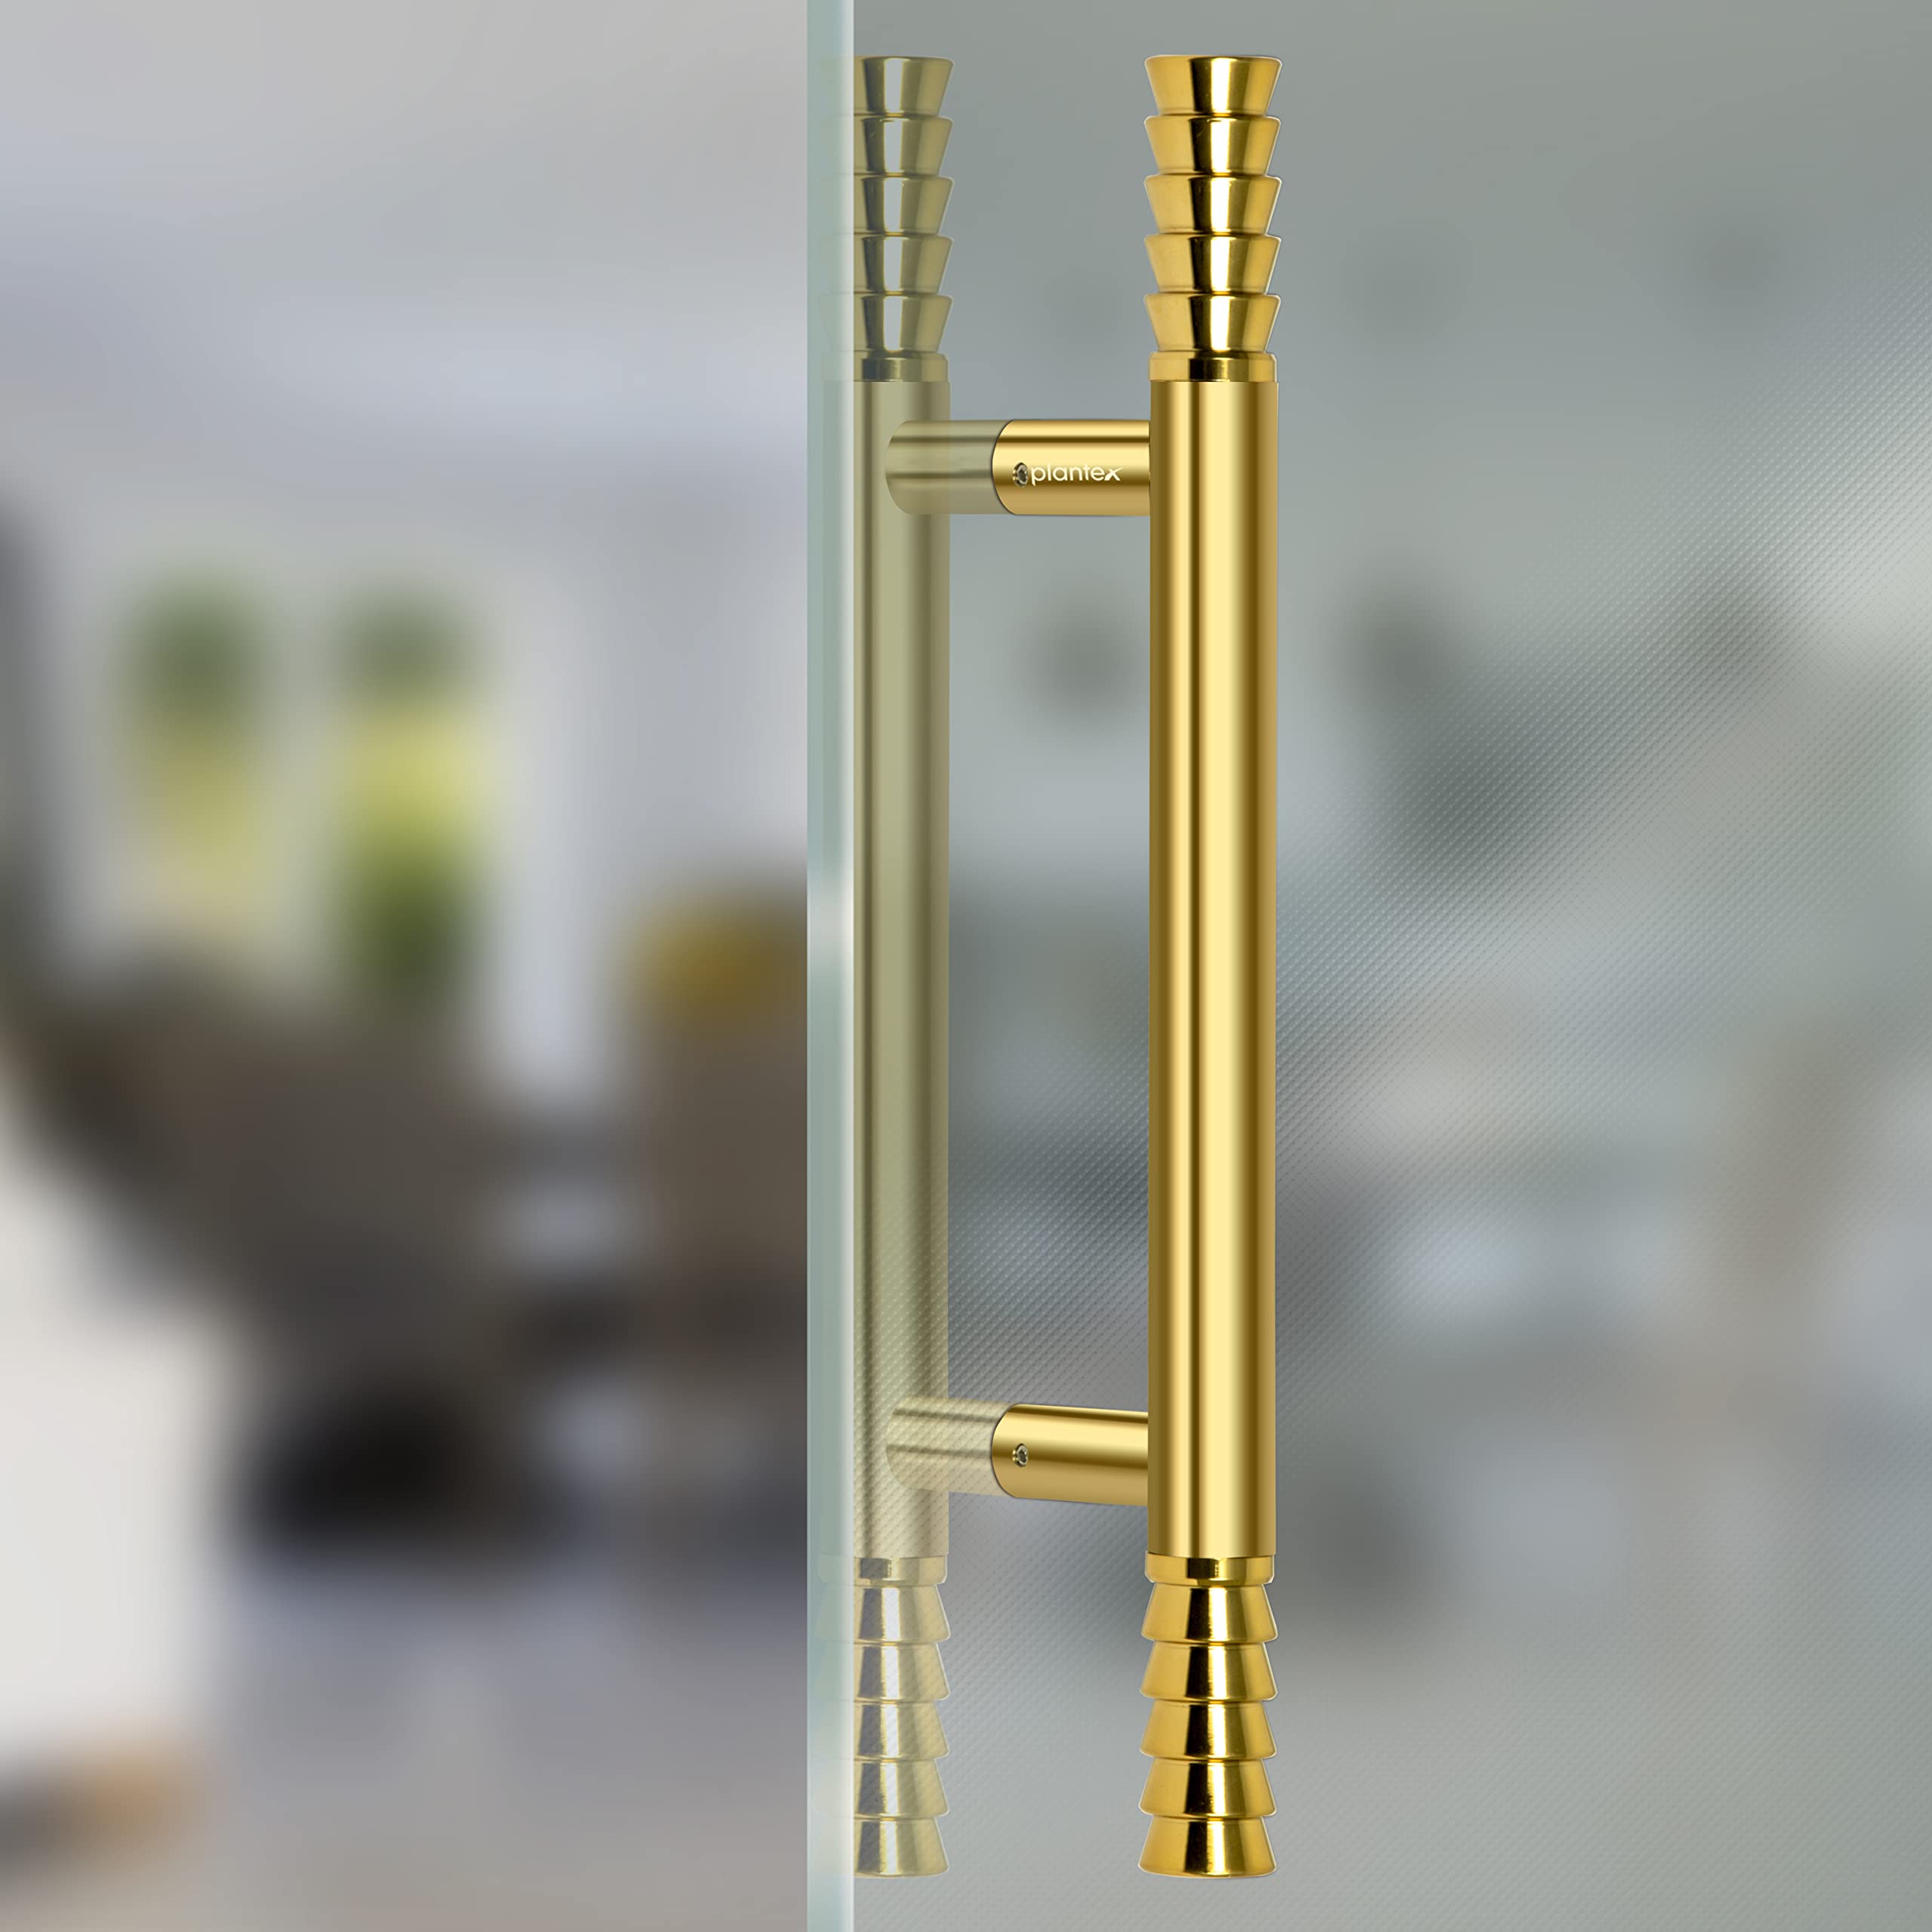 Plantex Altros Main Door Handle/Door & Home Decor/14 Inch Main Door  Handle/Door Pull Push Handle - Pack of 1 (106 - Black & Gold)